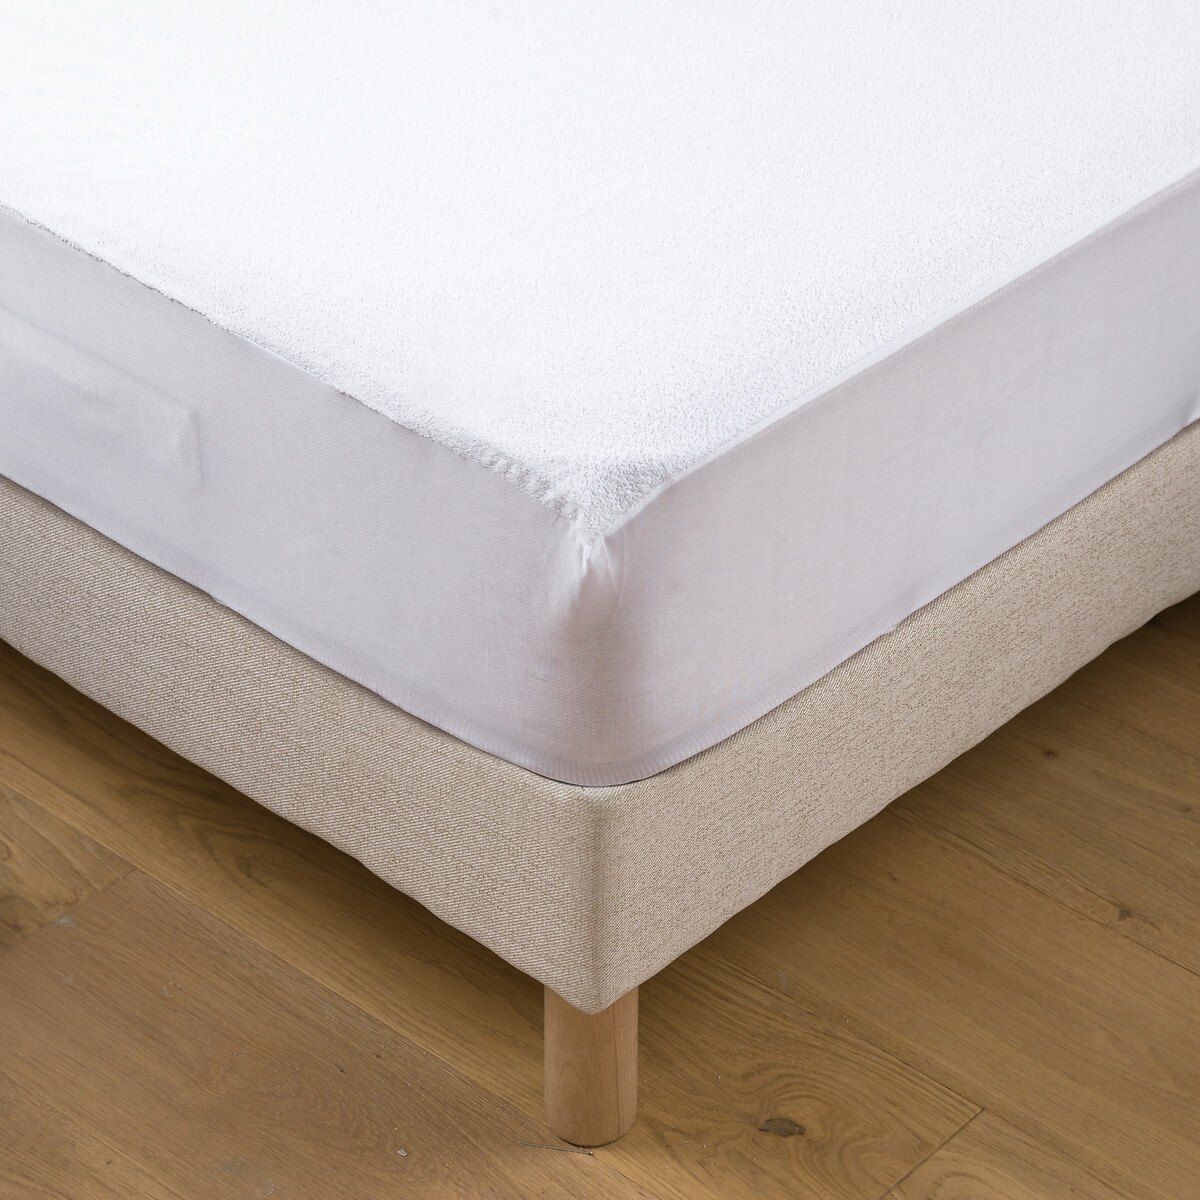 Наматрасник из махровой непромокаемой ткани 120 x 190 см белый простыня для раскладного дивана из махровой ткани и полиуретана 140 x 190 см белый